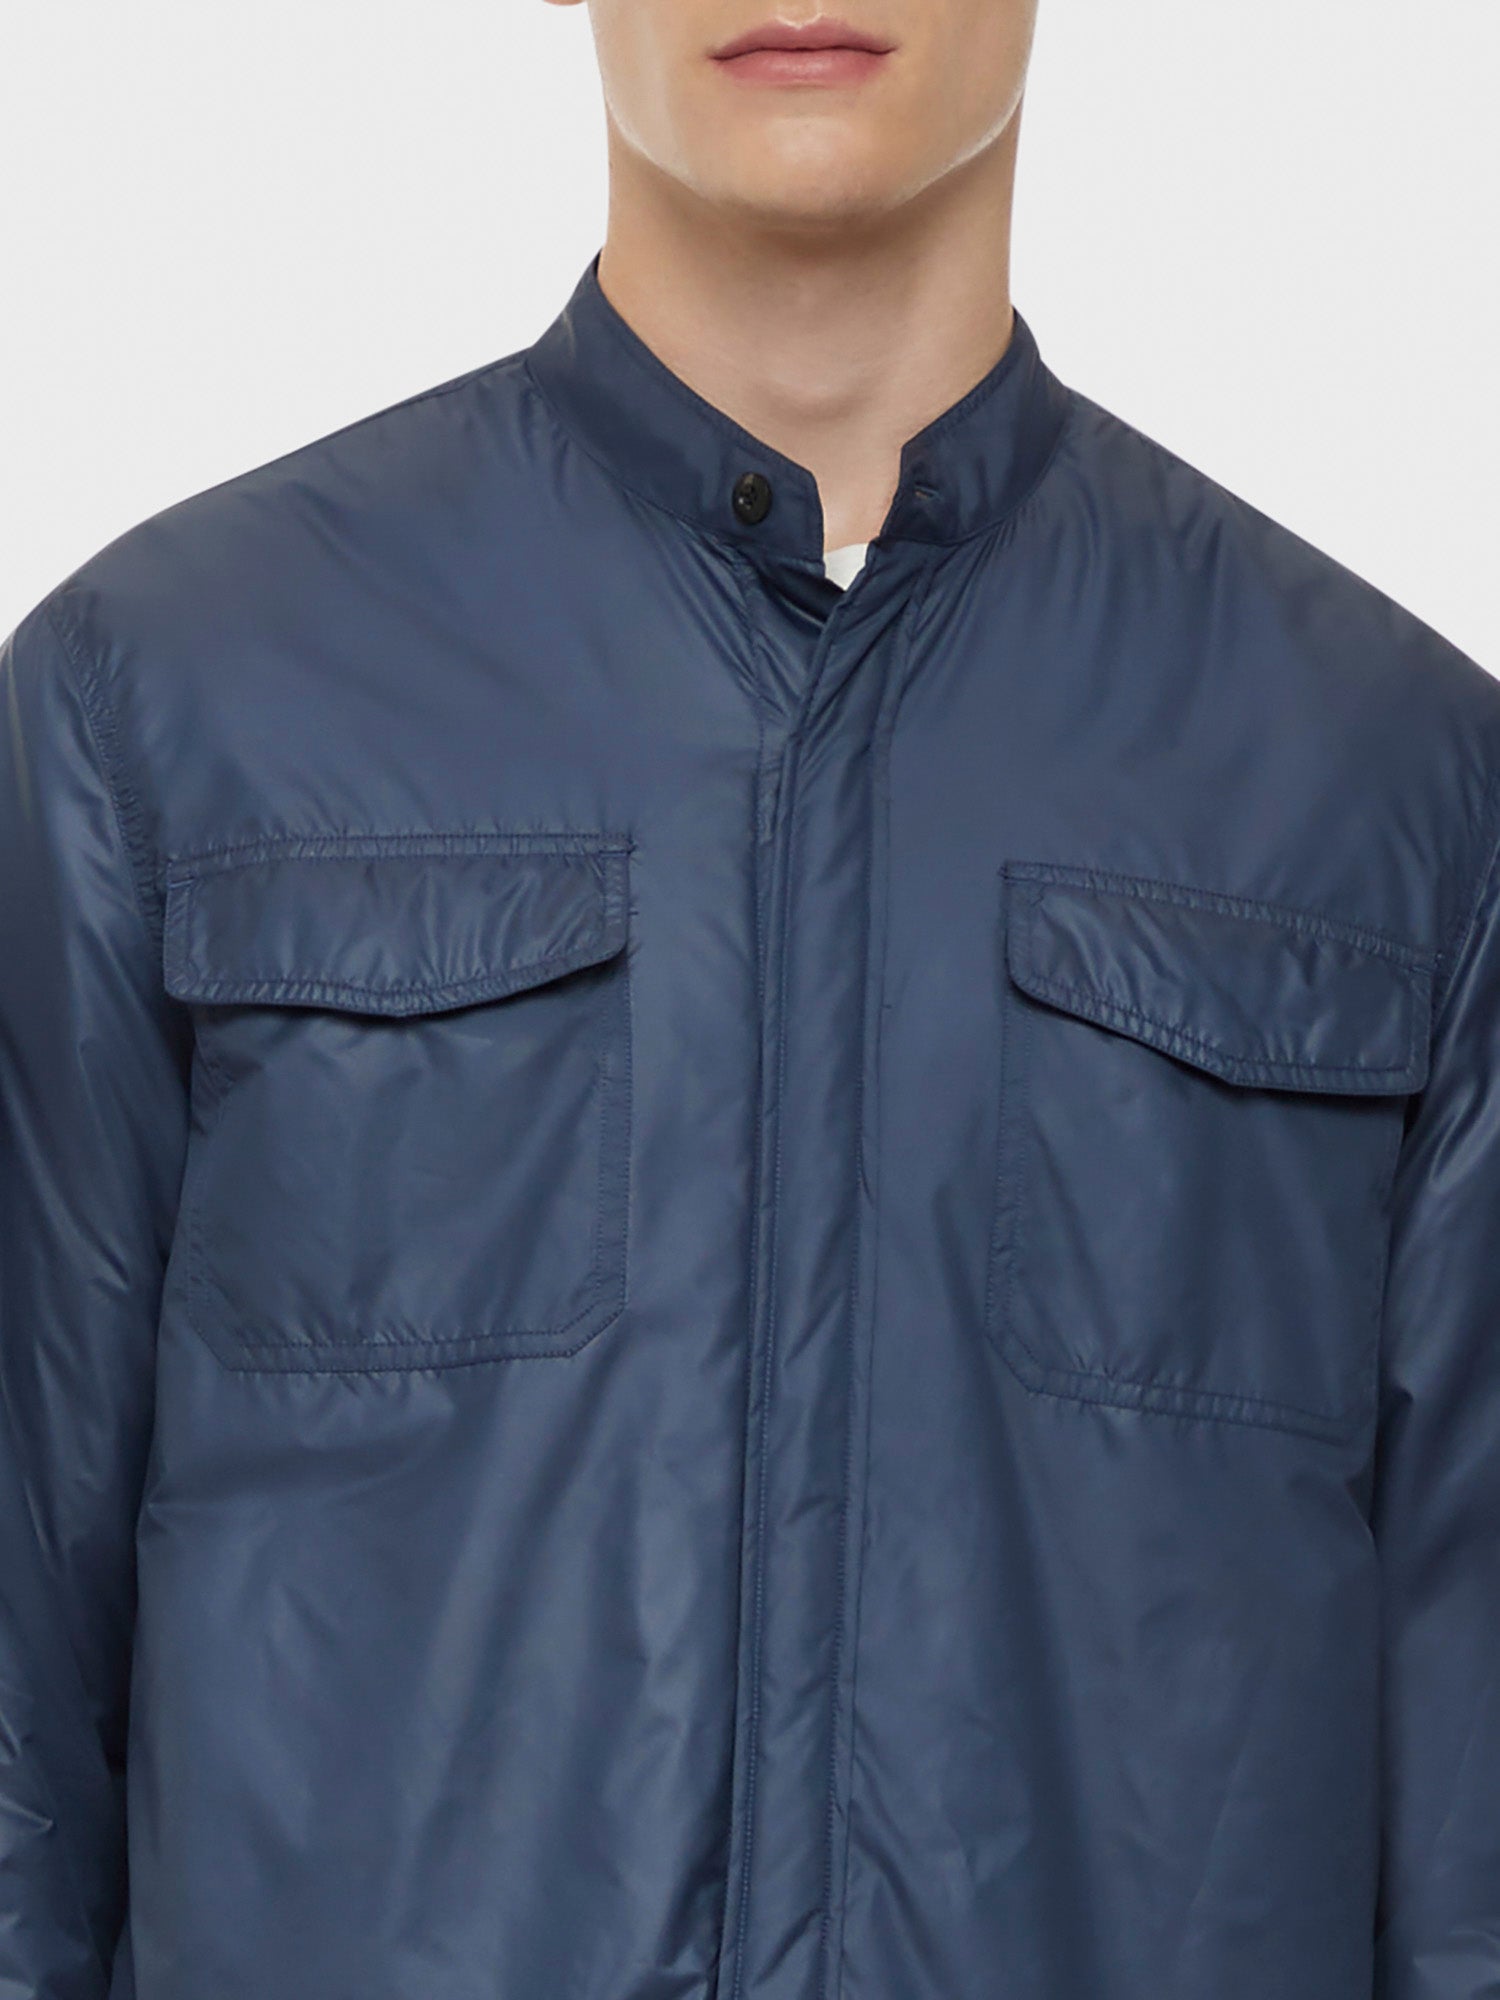 Caruso Menswear Abbigliamento Uomo Overshirt imbottita in nylon blu dettaglio